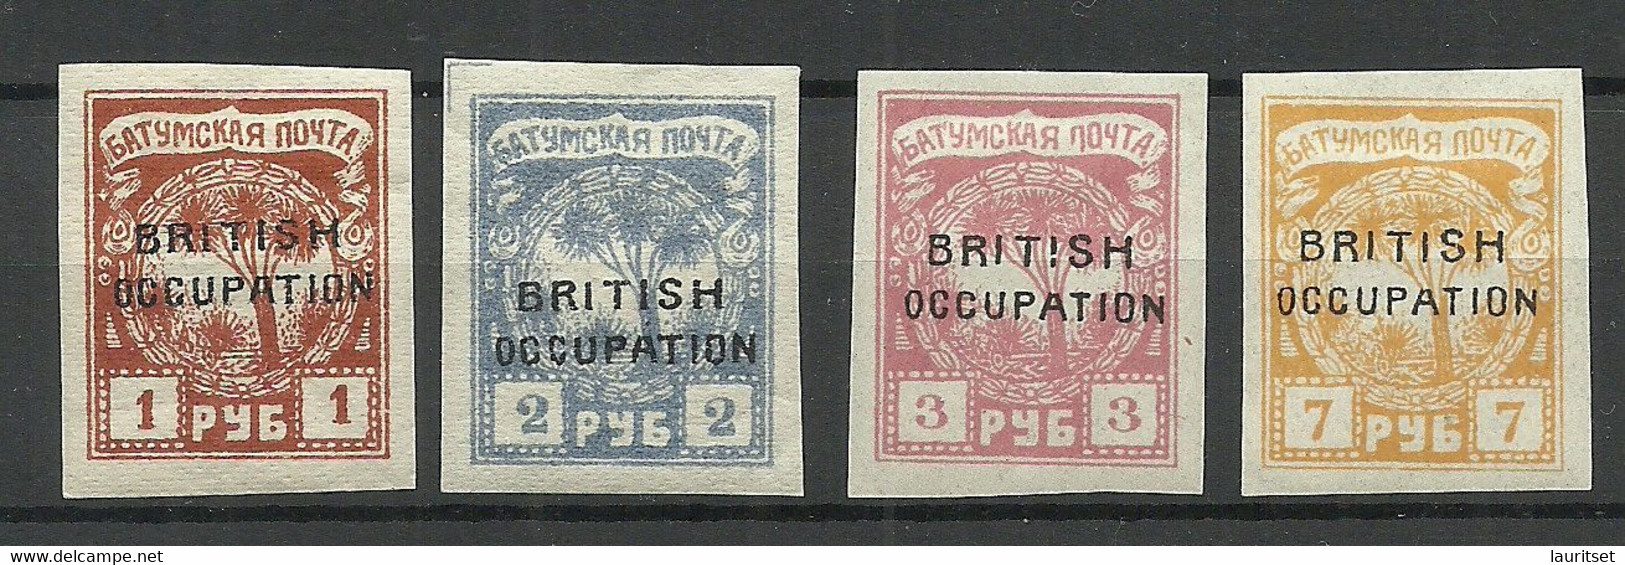 BATUM Batumi RUSSLAND RUSSIA 1919 British Occupation, 4 Stamps,* - 1919-20 Occupazione Britannica